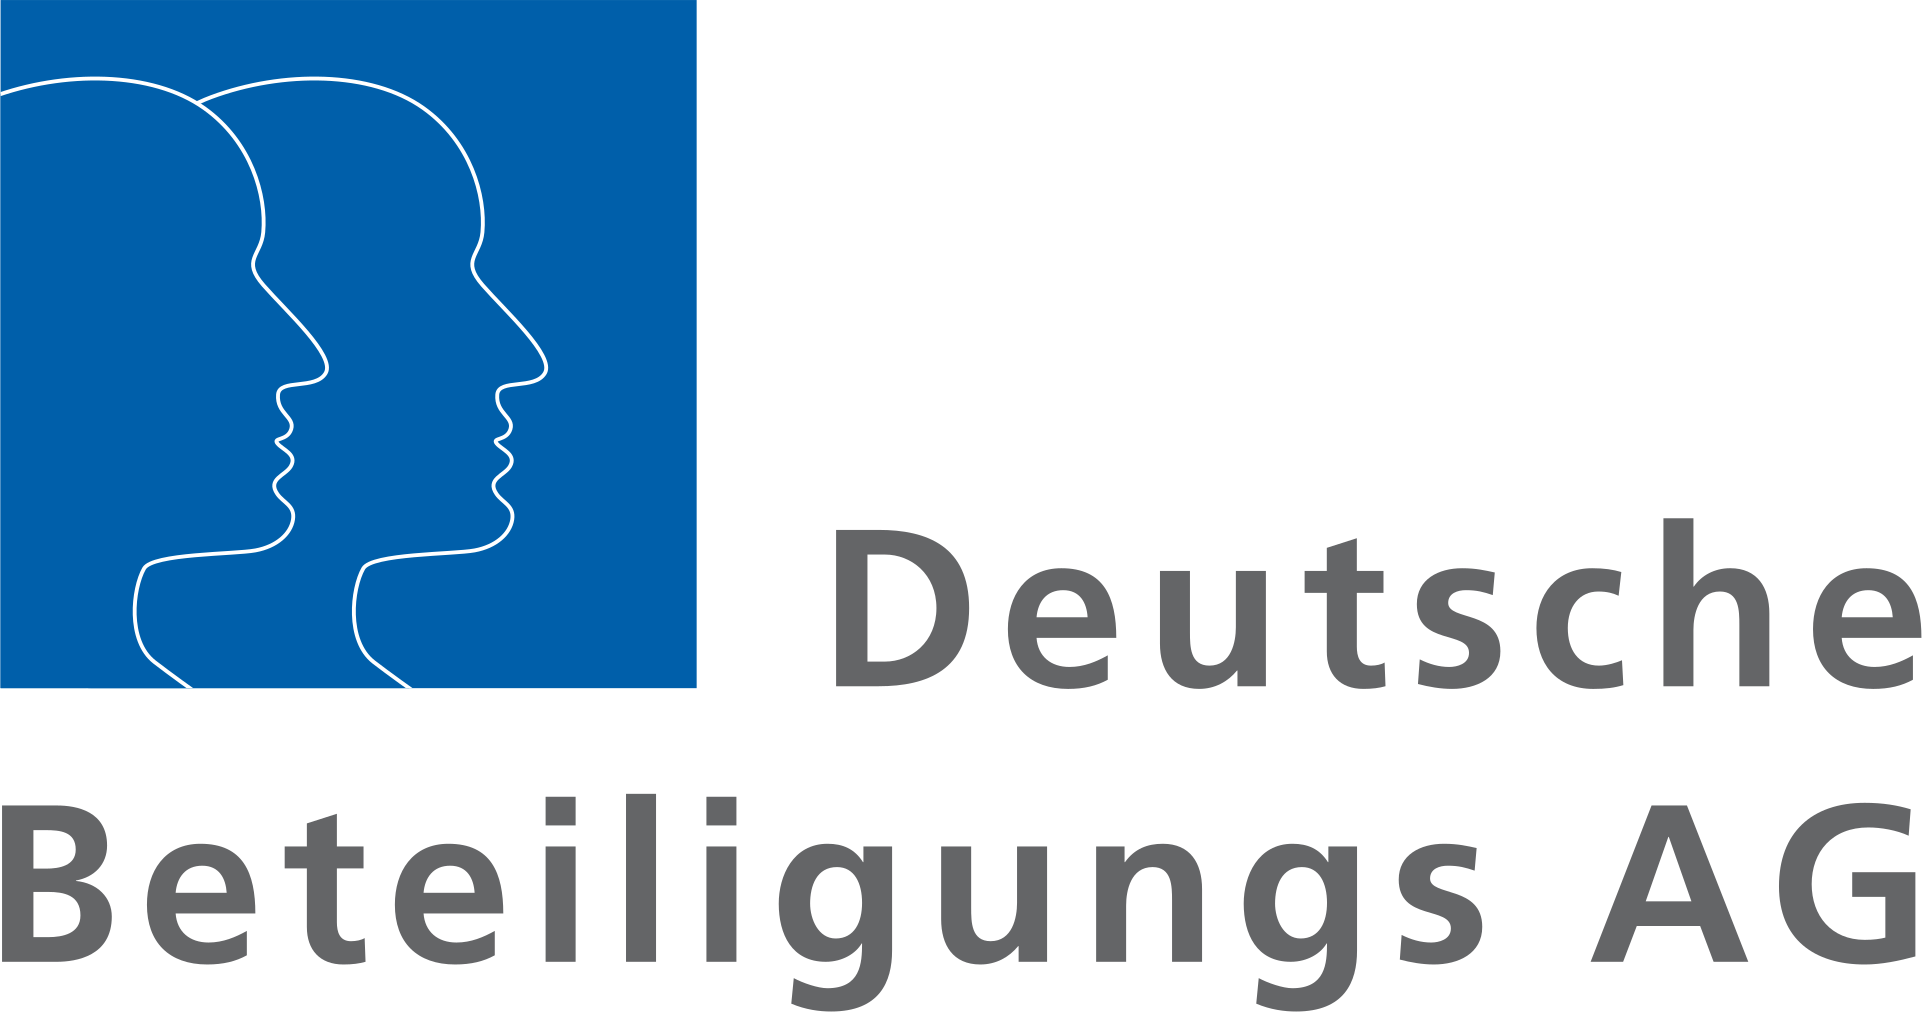 Deutsche Beteiligungs AG Logo